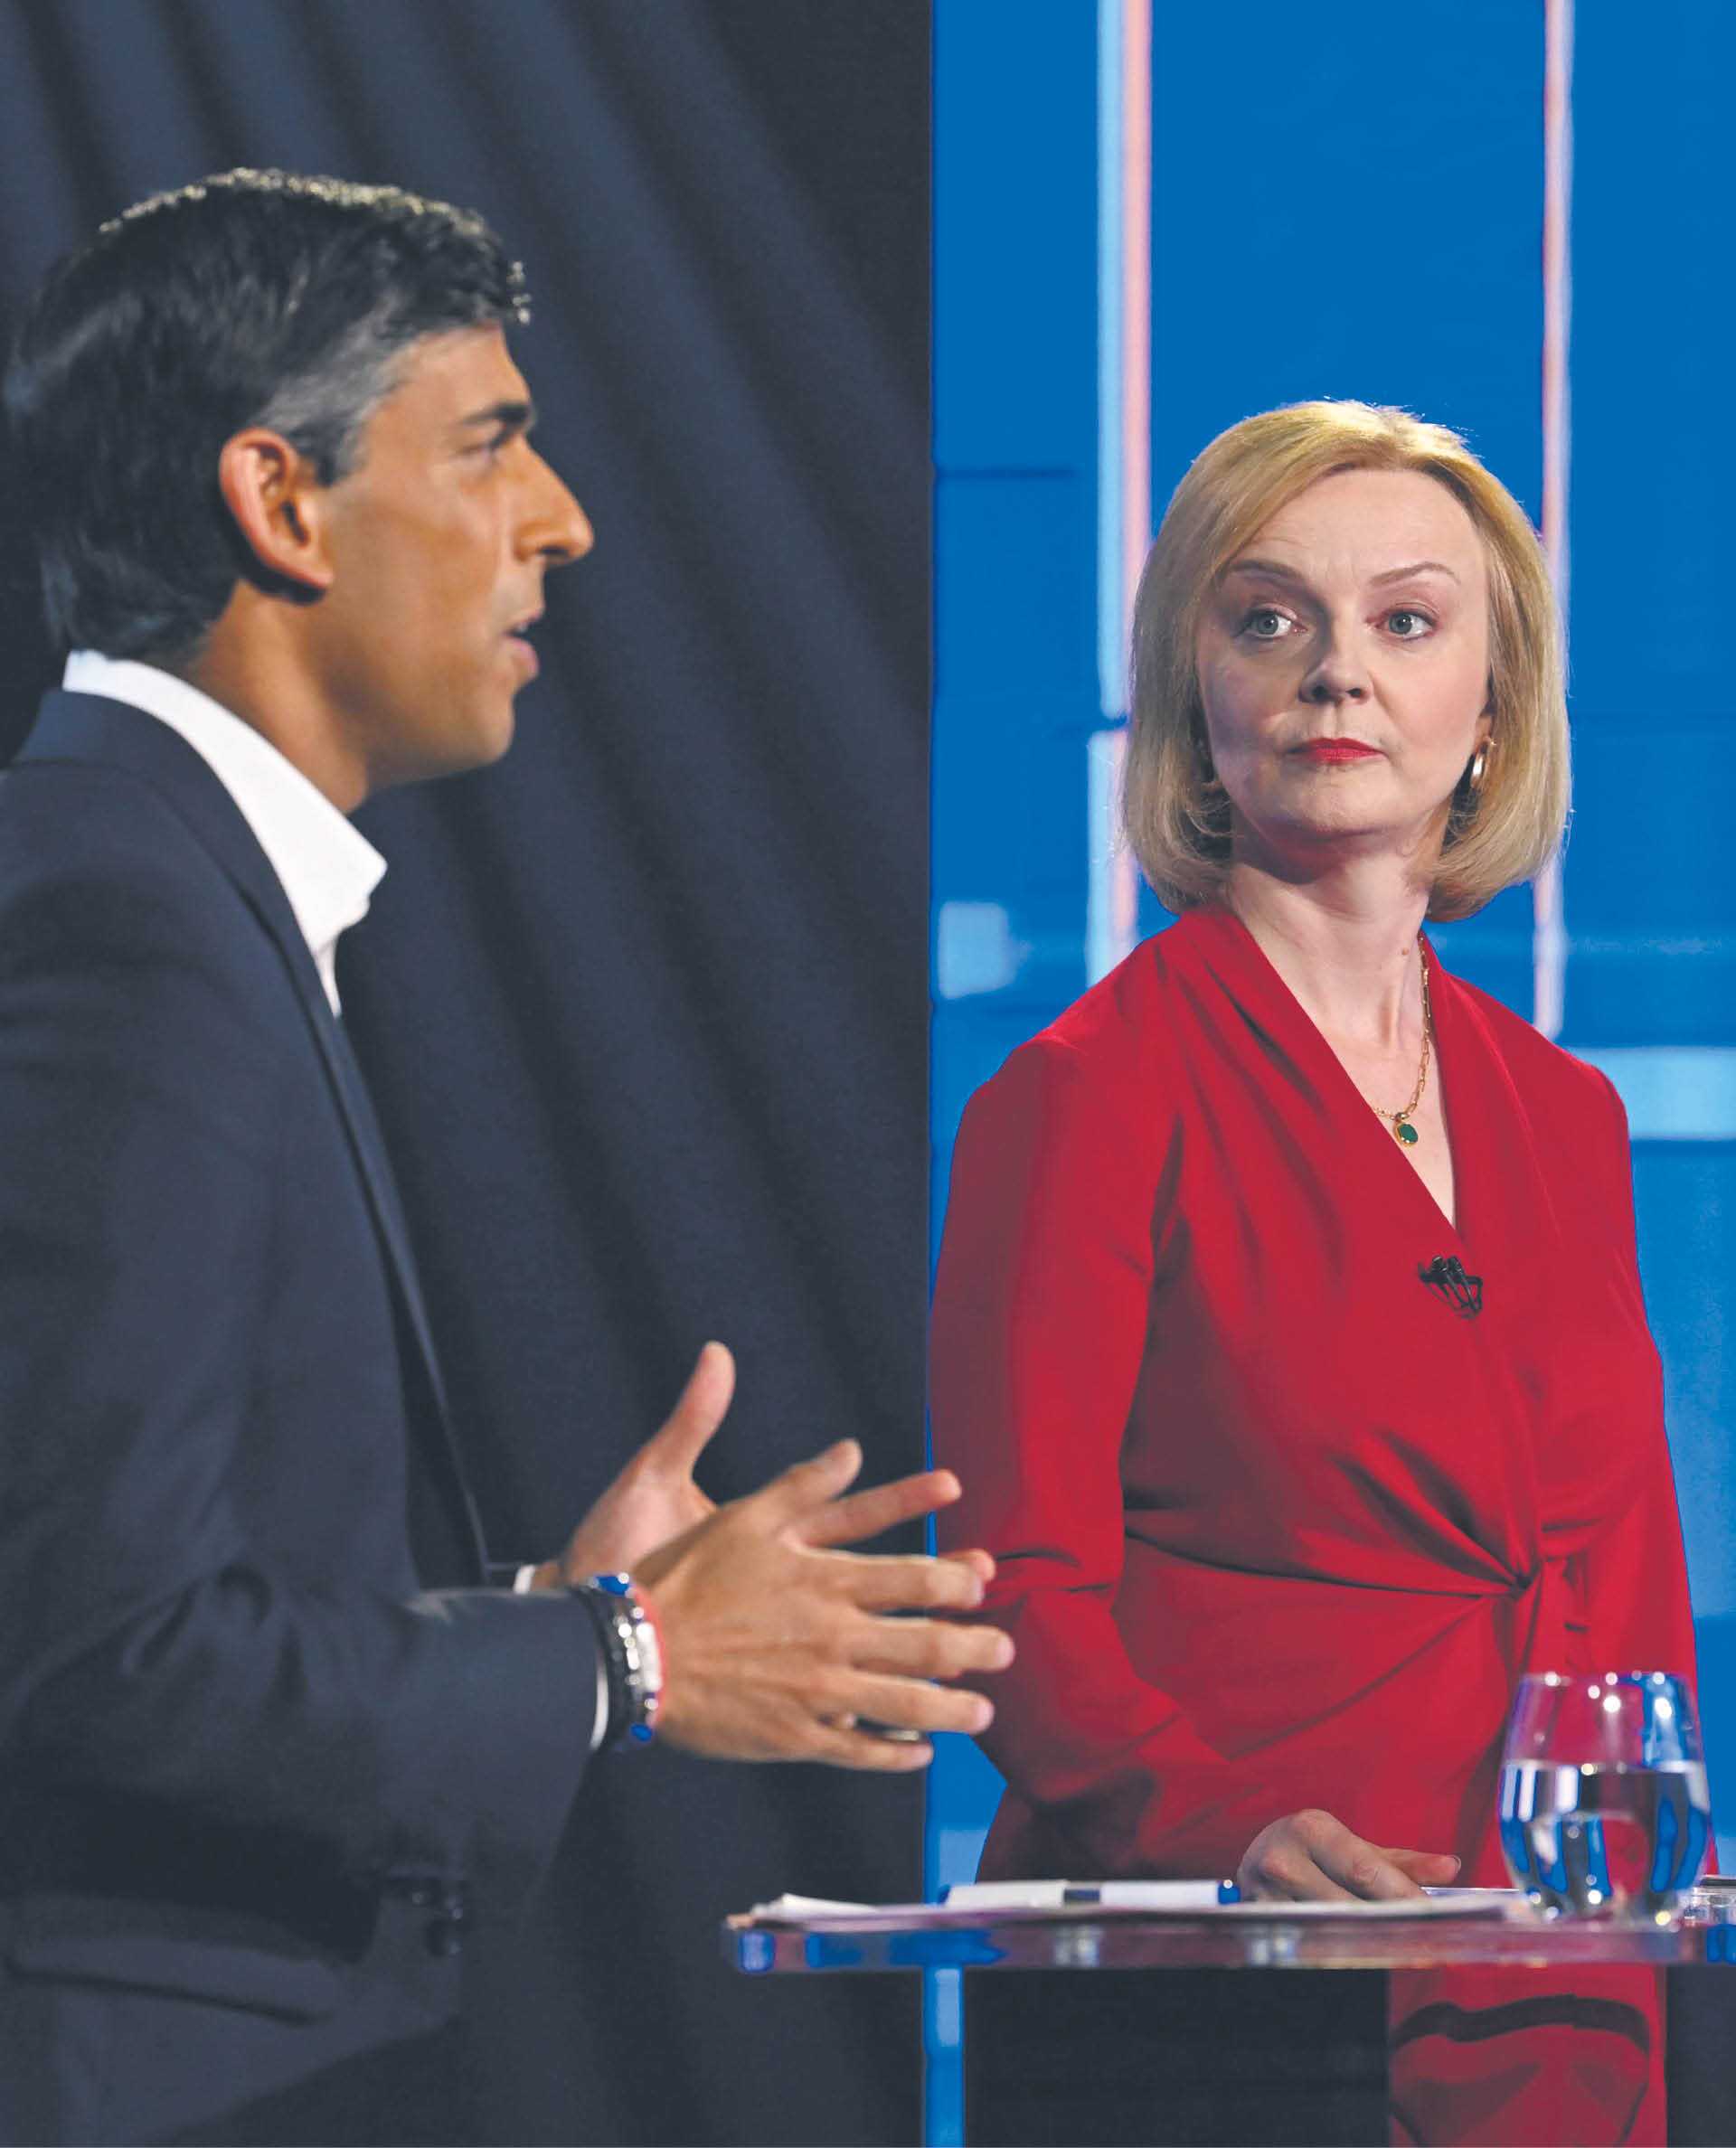 O władzę w Partii Konserwatywnej walczą jeszcze Rishi Sunak i Liz Truss. Zdjęcie z debaty kandydatów z 17 lipca